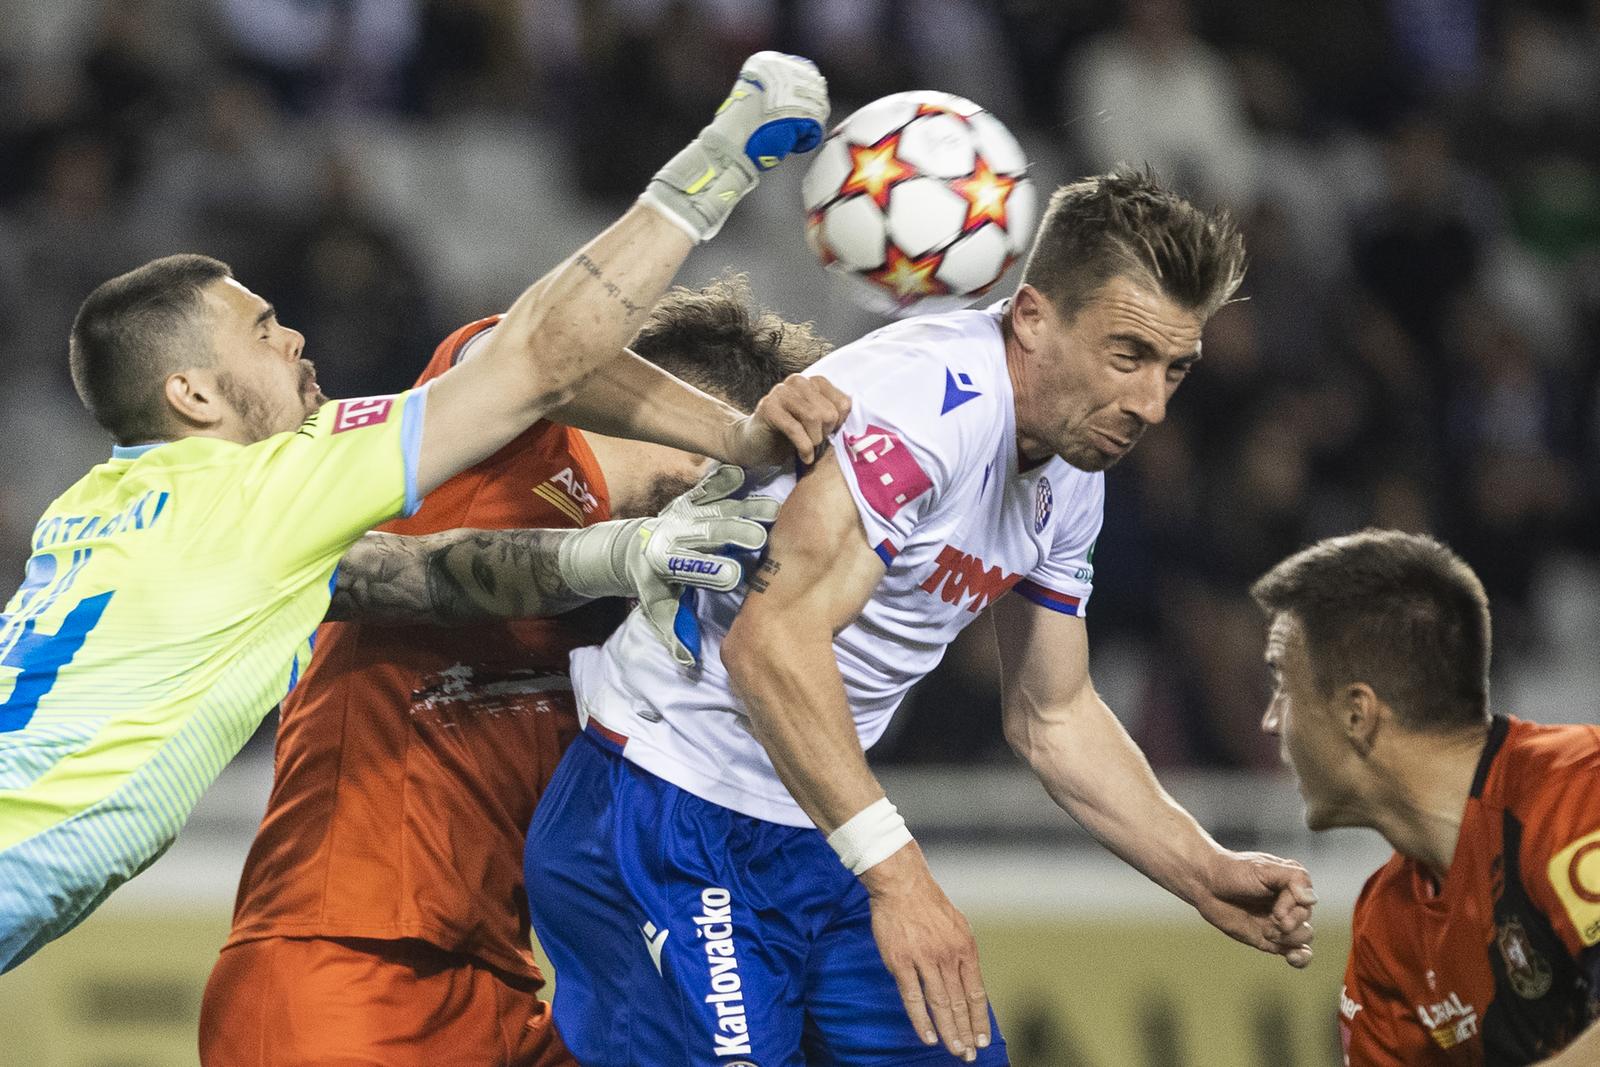 Poraz na Poljudu: Hajduk - Gorica 1-0